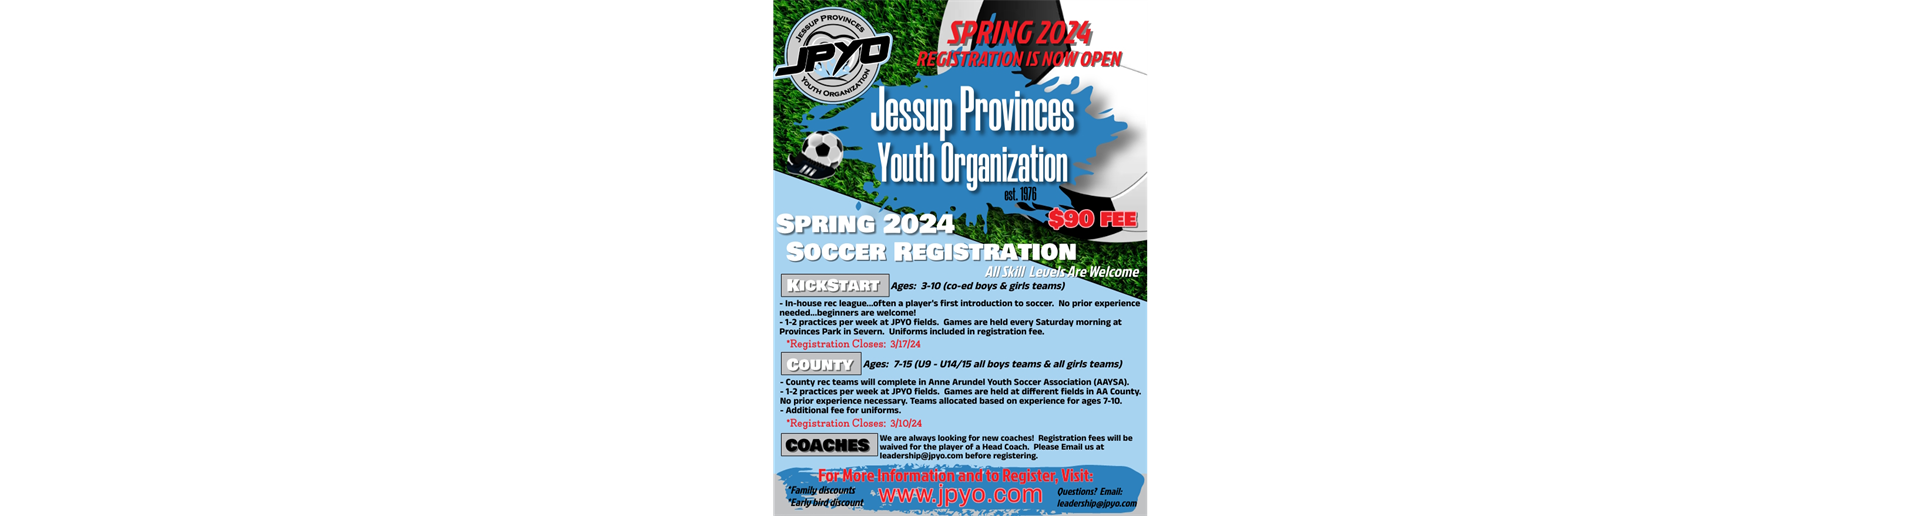 Spring '24 Soccer Registration is OPEN